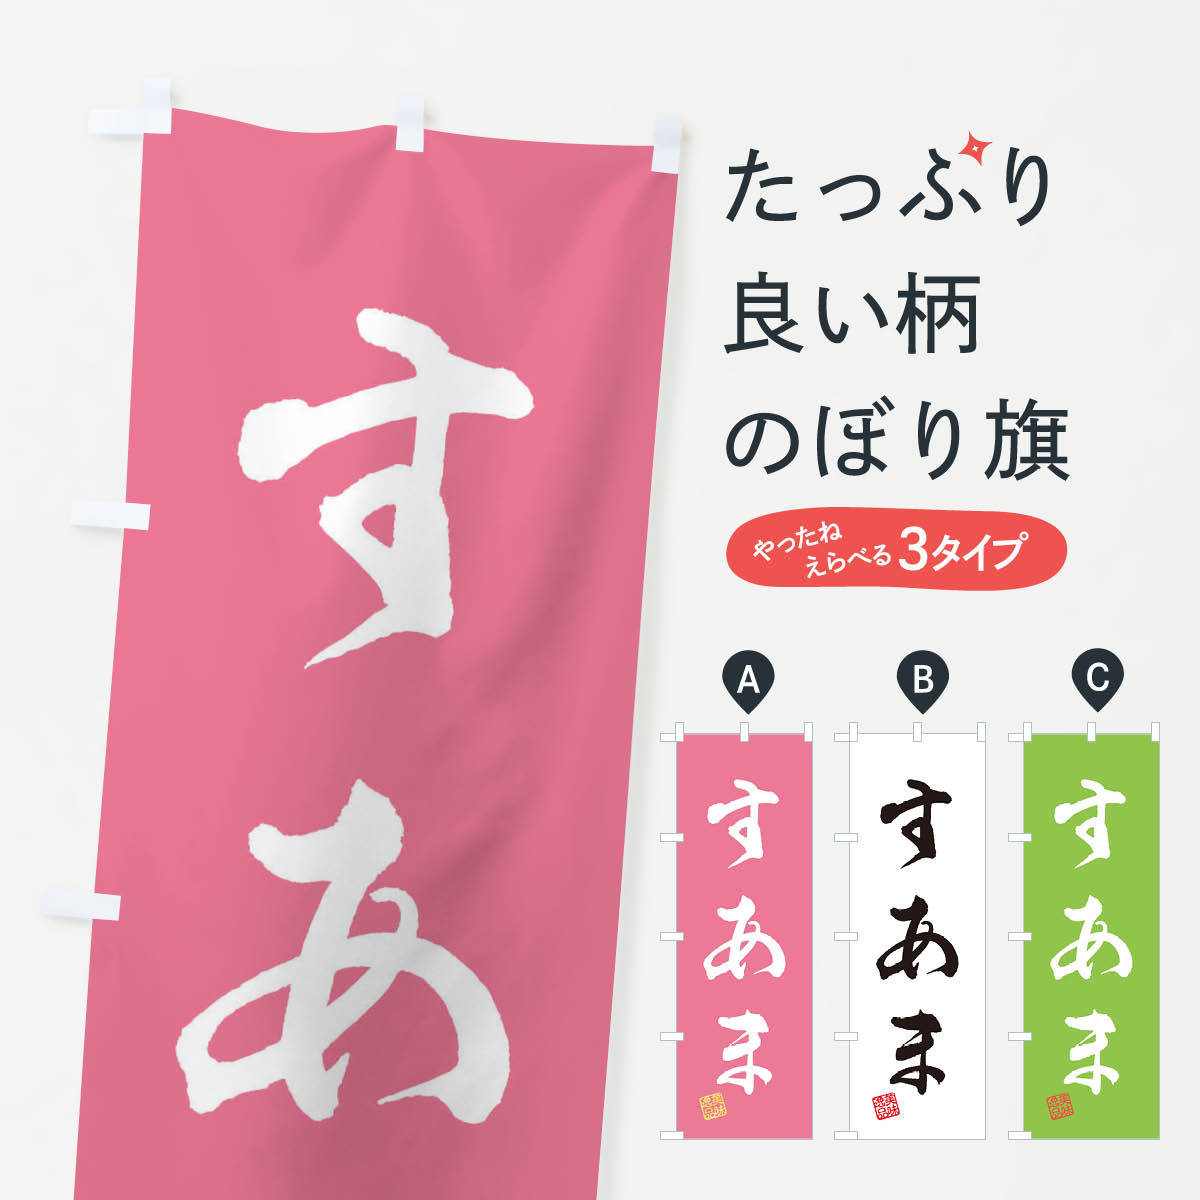 【ネコポス送料360】 のぼり旗 すあま・和菓子のぼり 3SK0 お餅・餅菓子